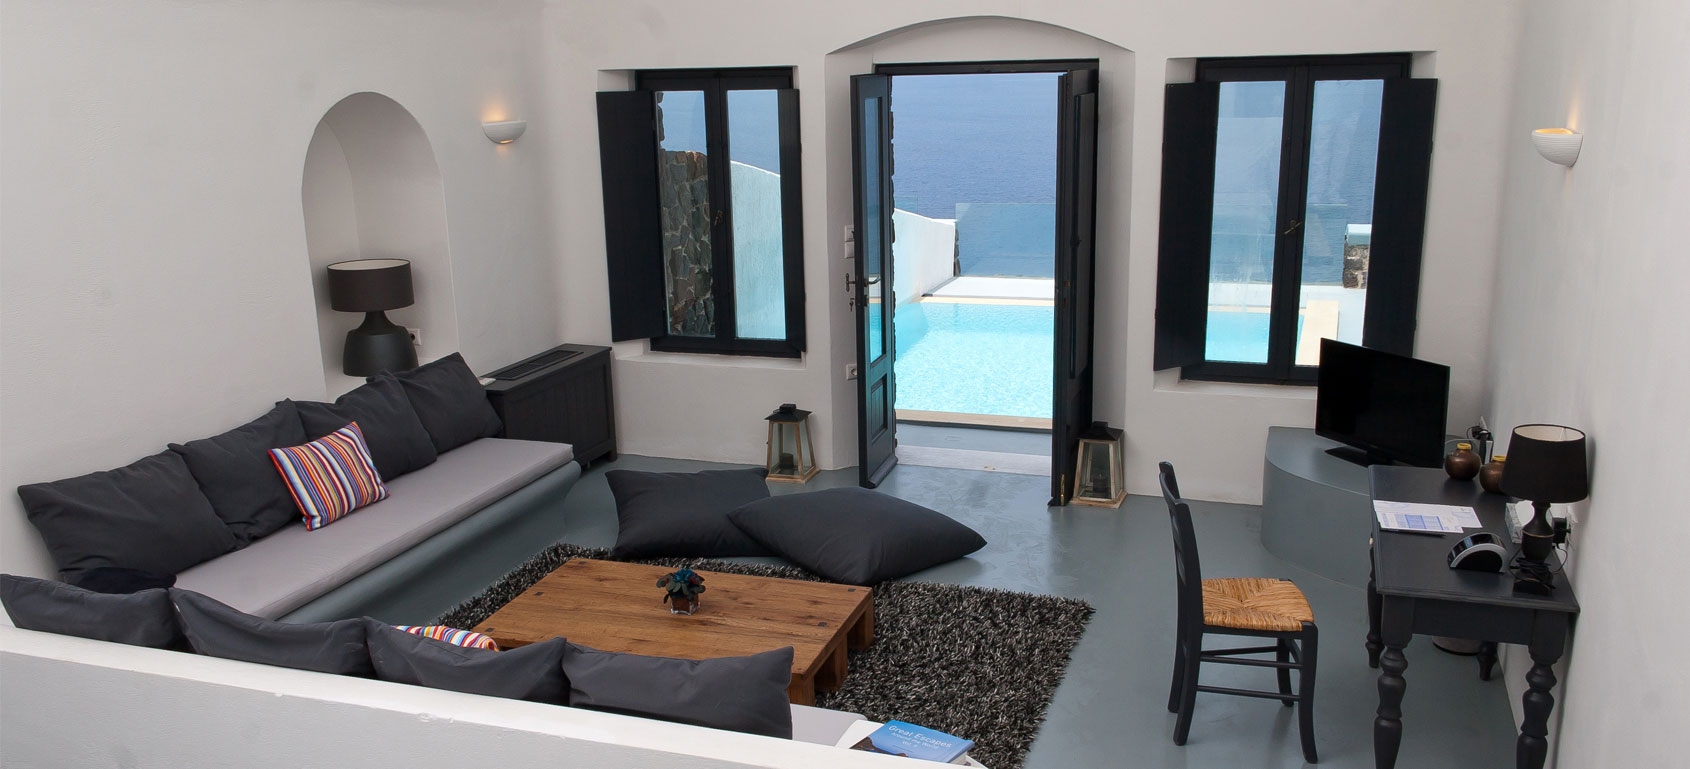 Infinity Honeymoon Cave Suite Private Pool & Spa, Ambassador Aegean Luxury, Santorini